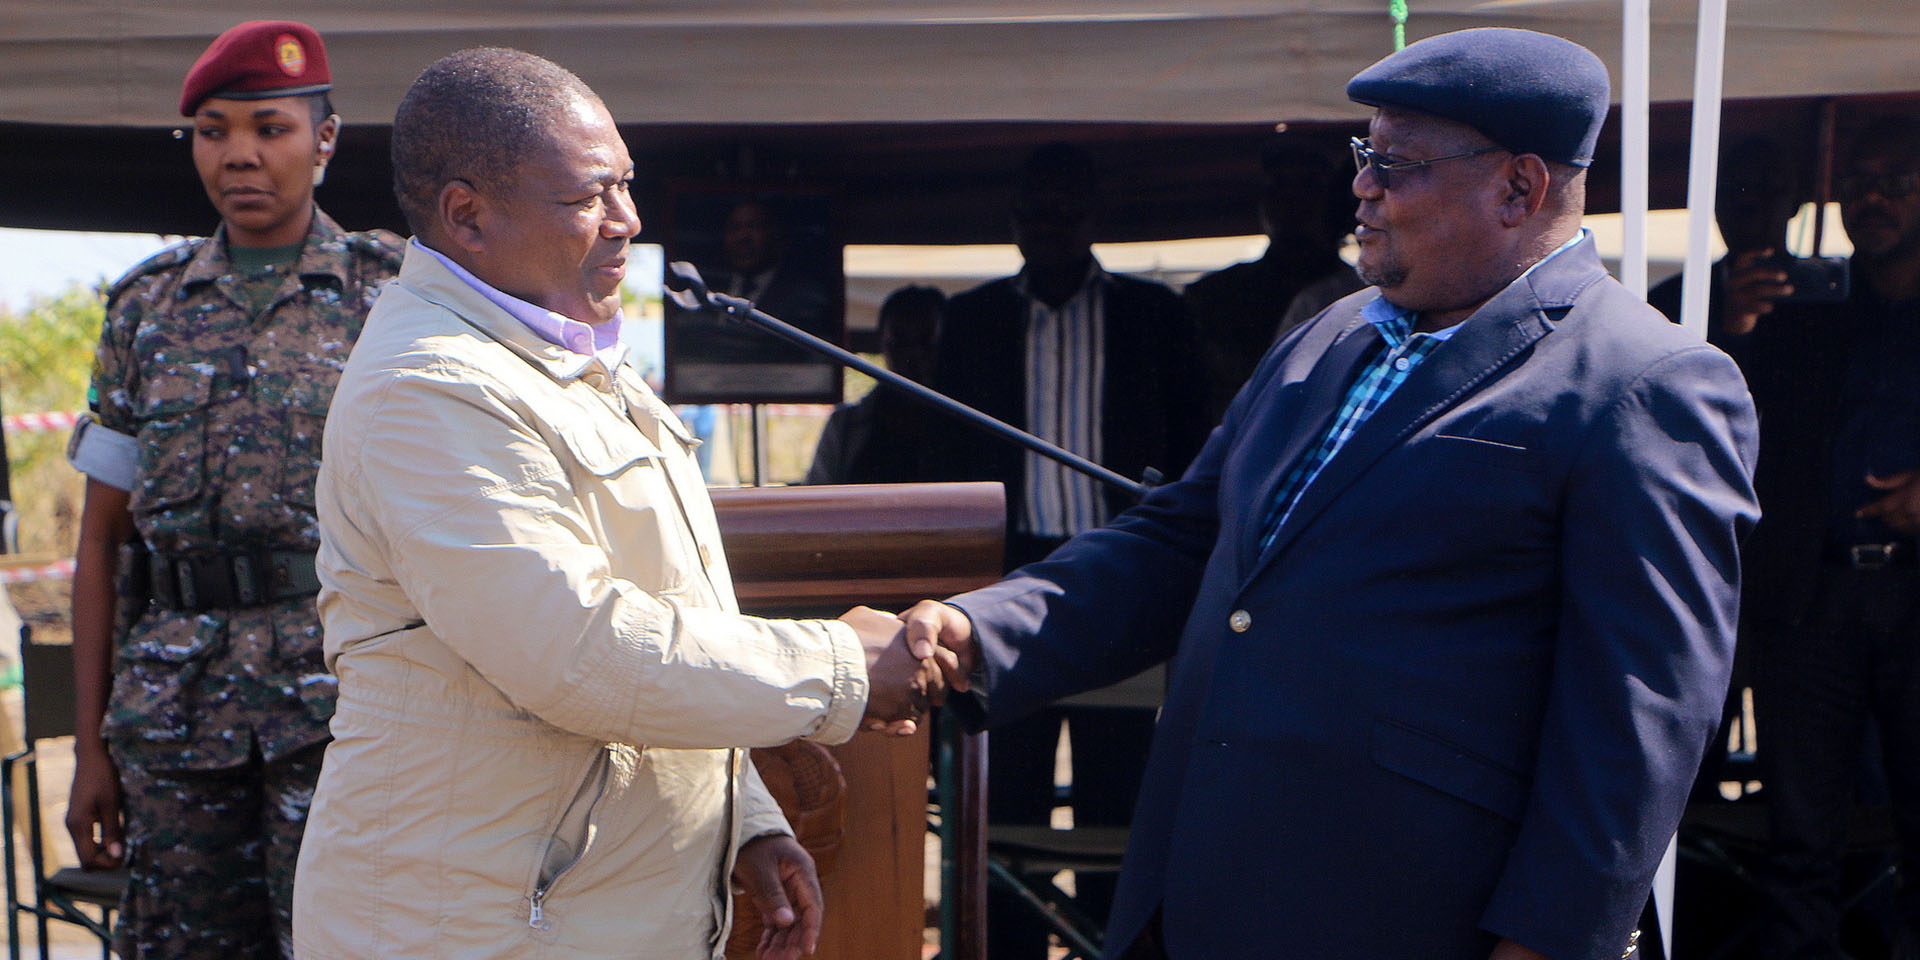  Der Präsident der RENAMO-Bewegung und der Präsident von Mosambik geben sich die Hand.